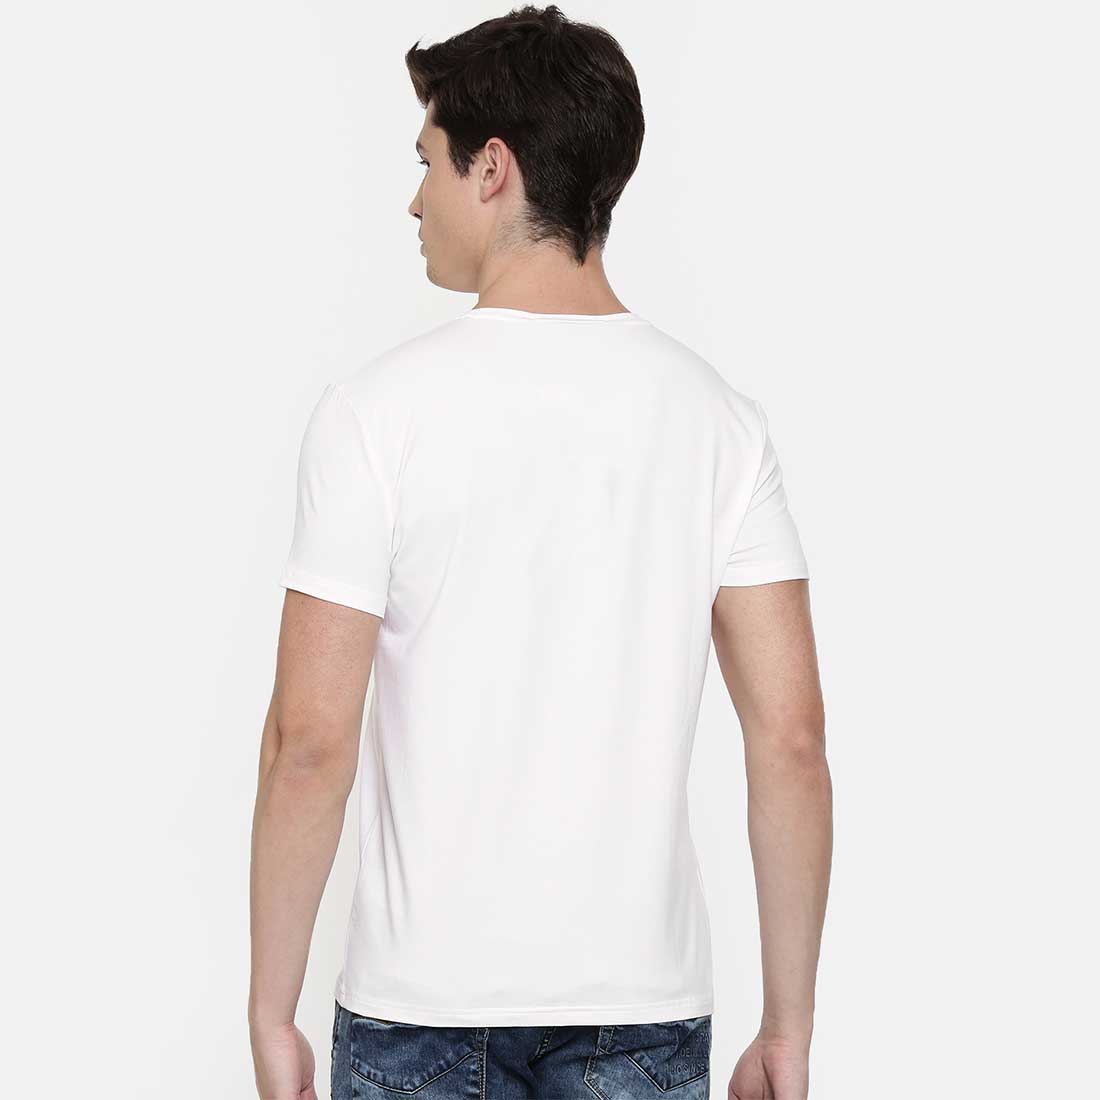 Lamaste White Men T-Shirt